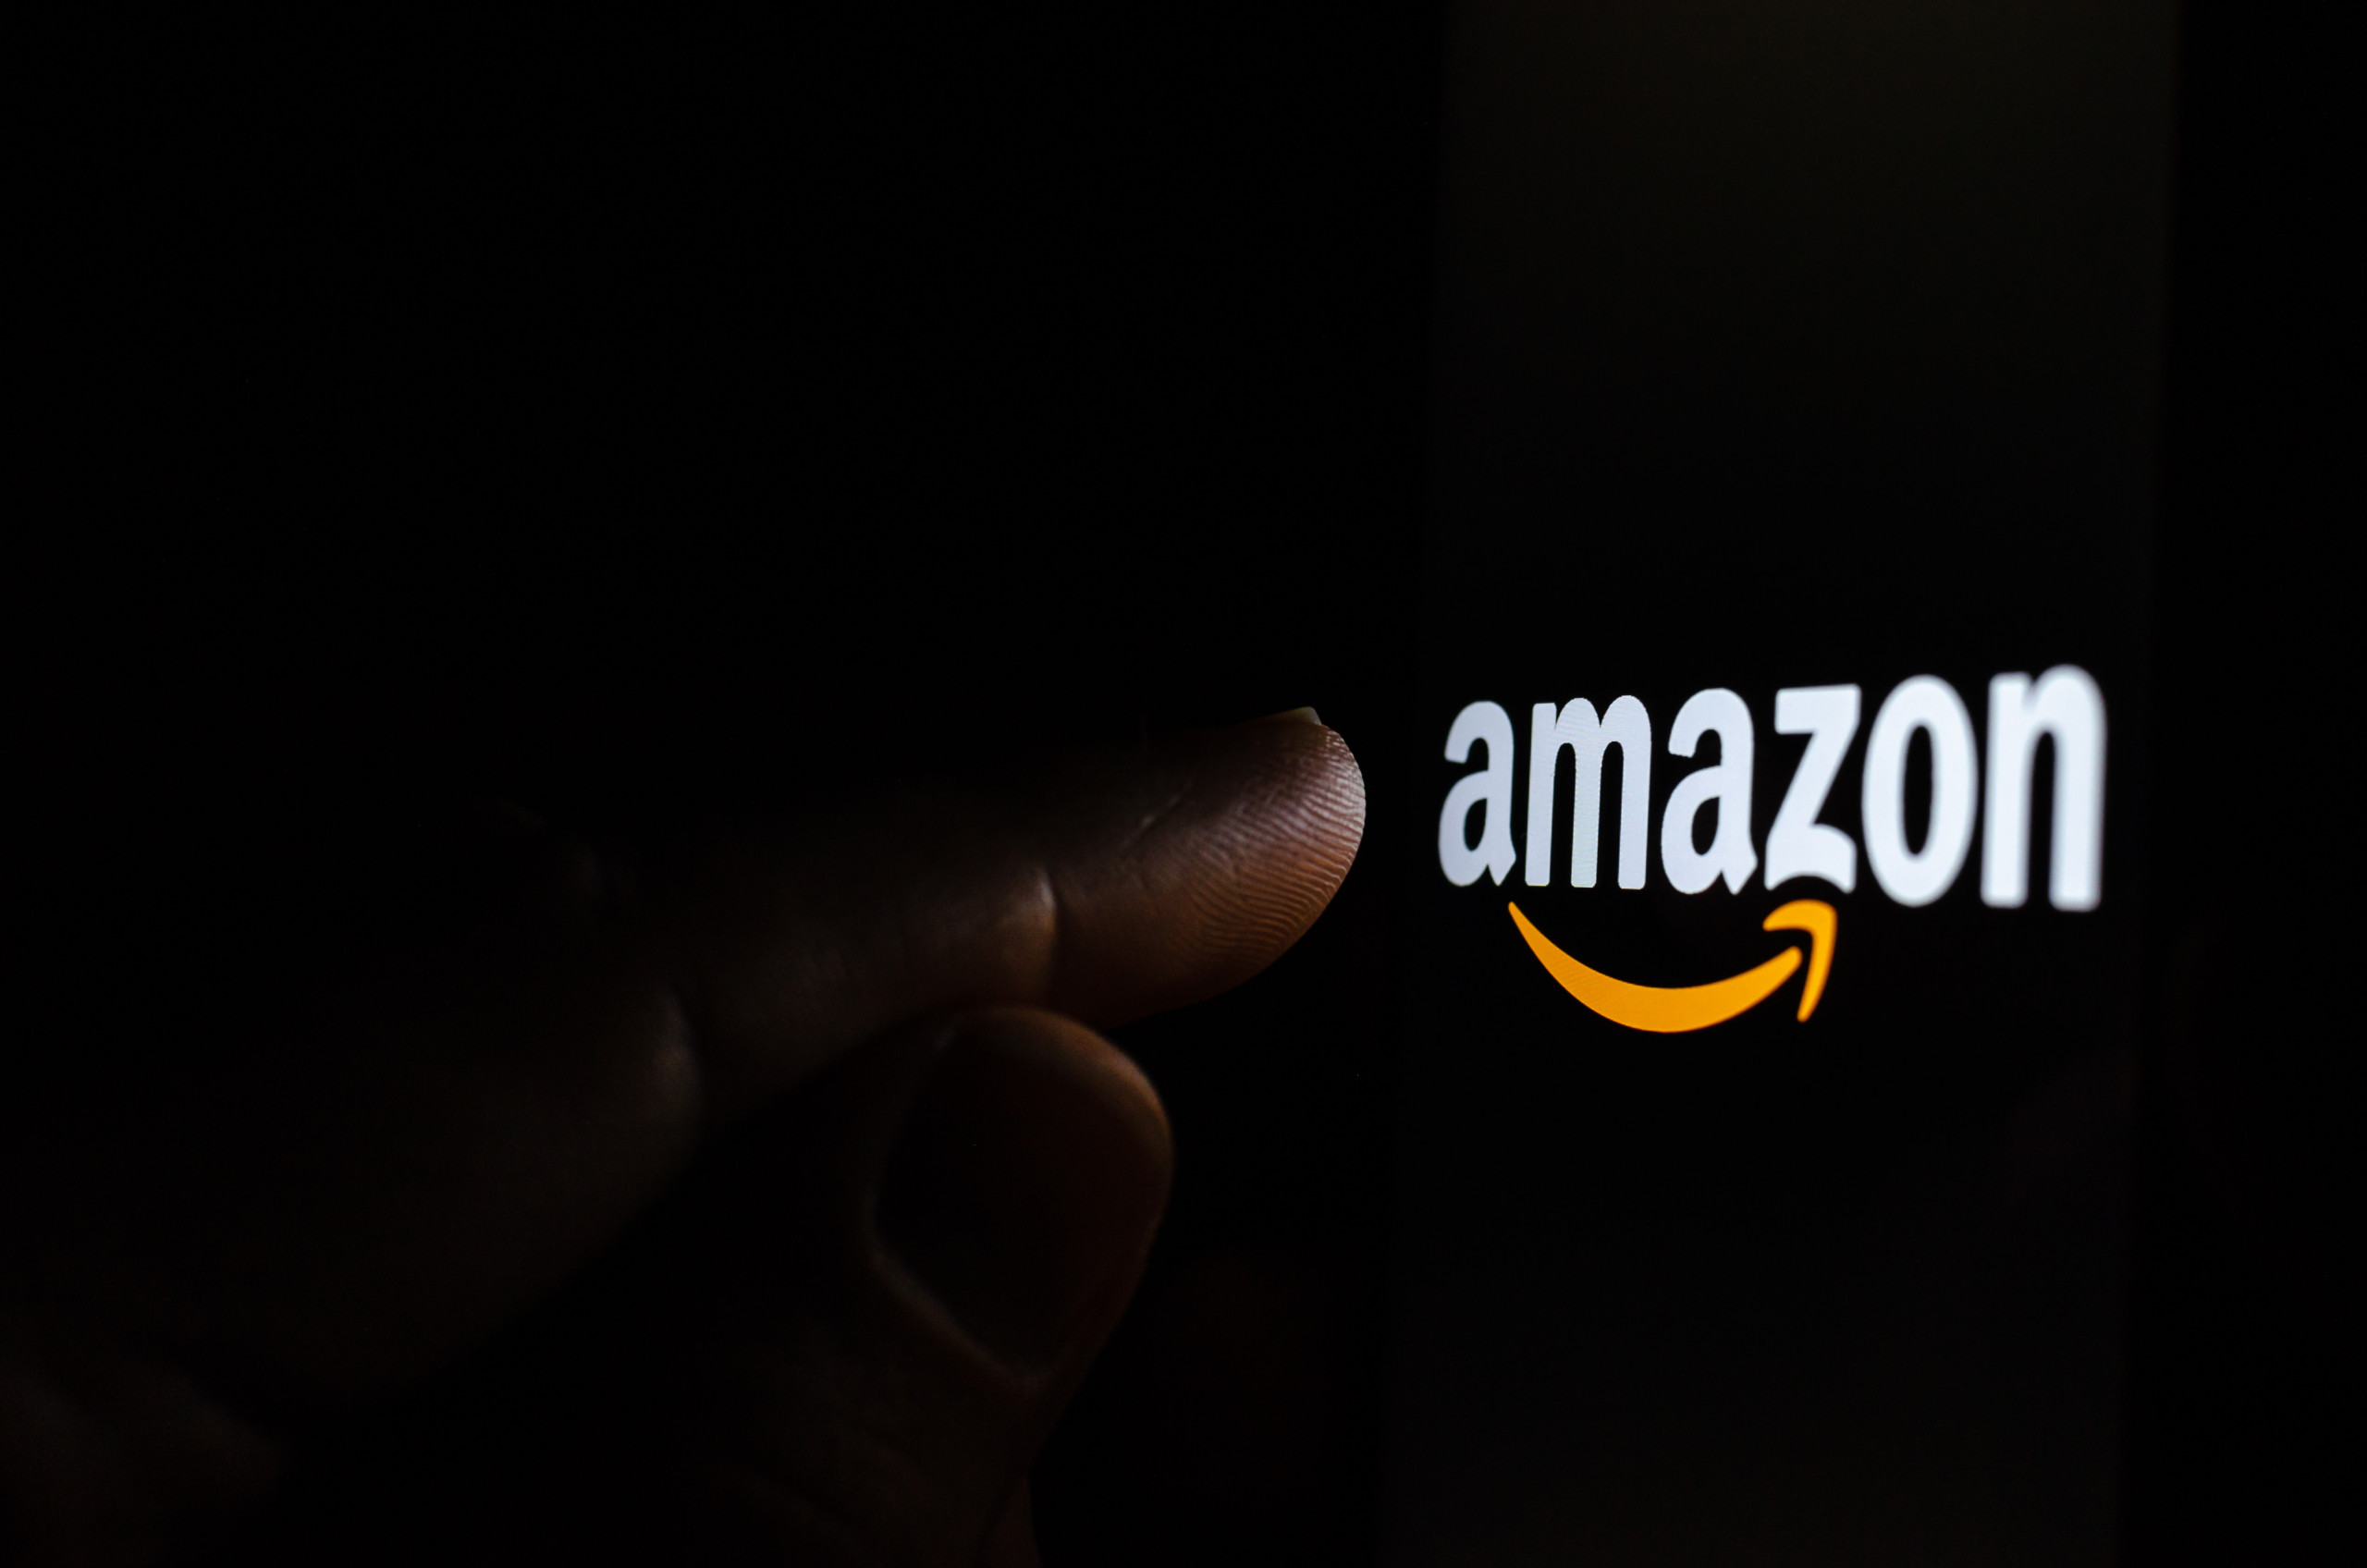 Amazon streicht Hunderte von Stellen im Cloud-Computing-Geschäft